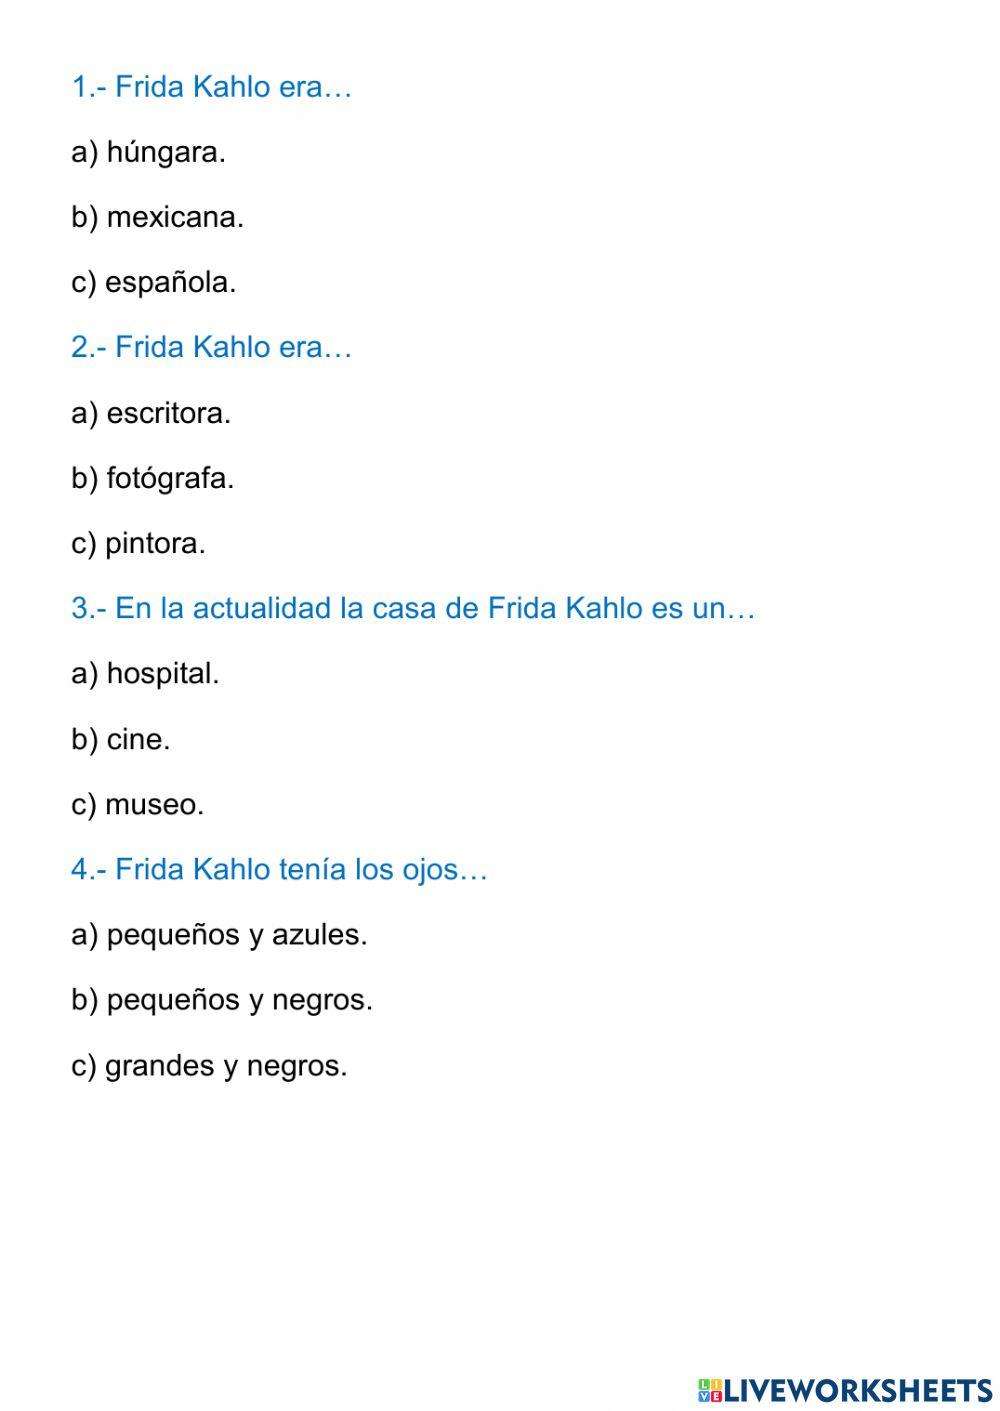 Comprensión lectora: Frida Kahlo